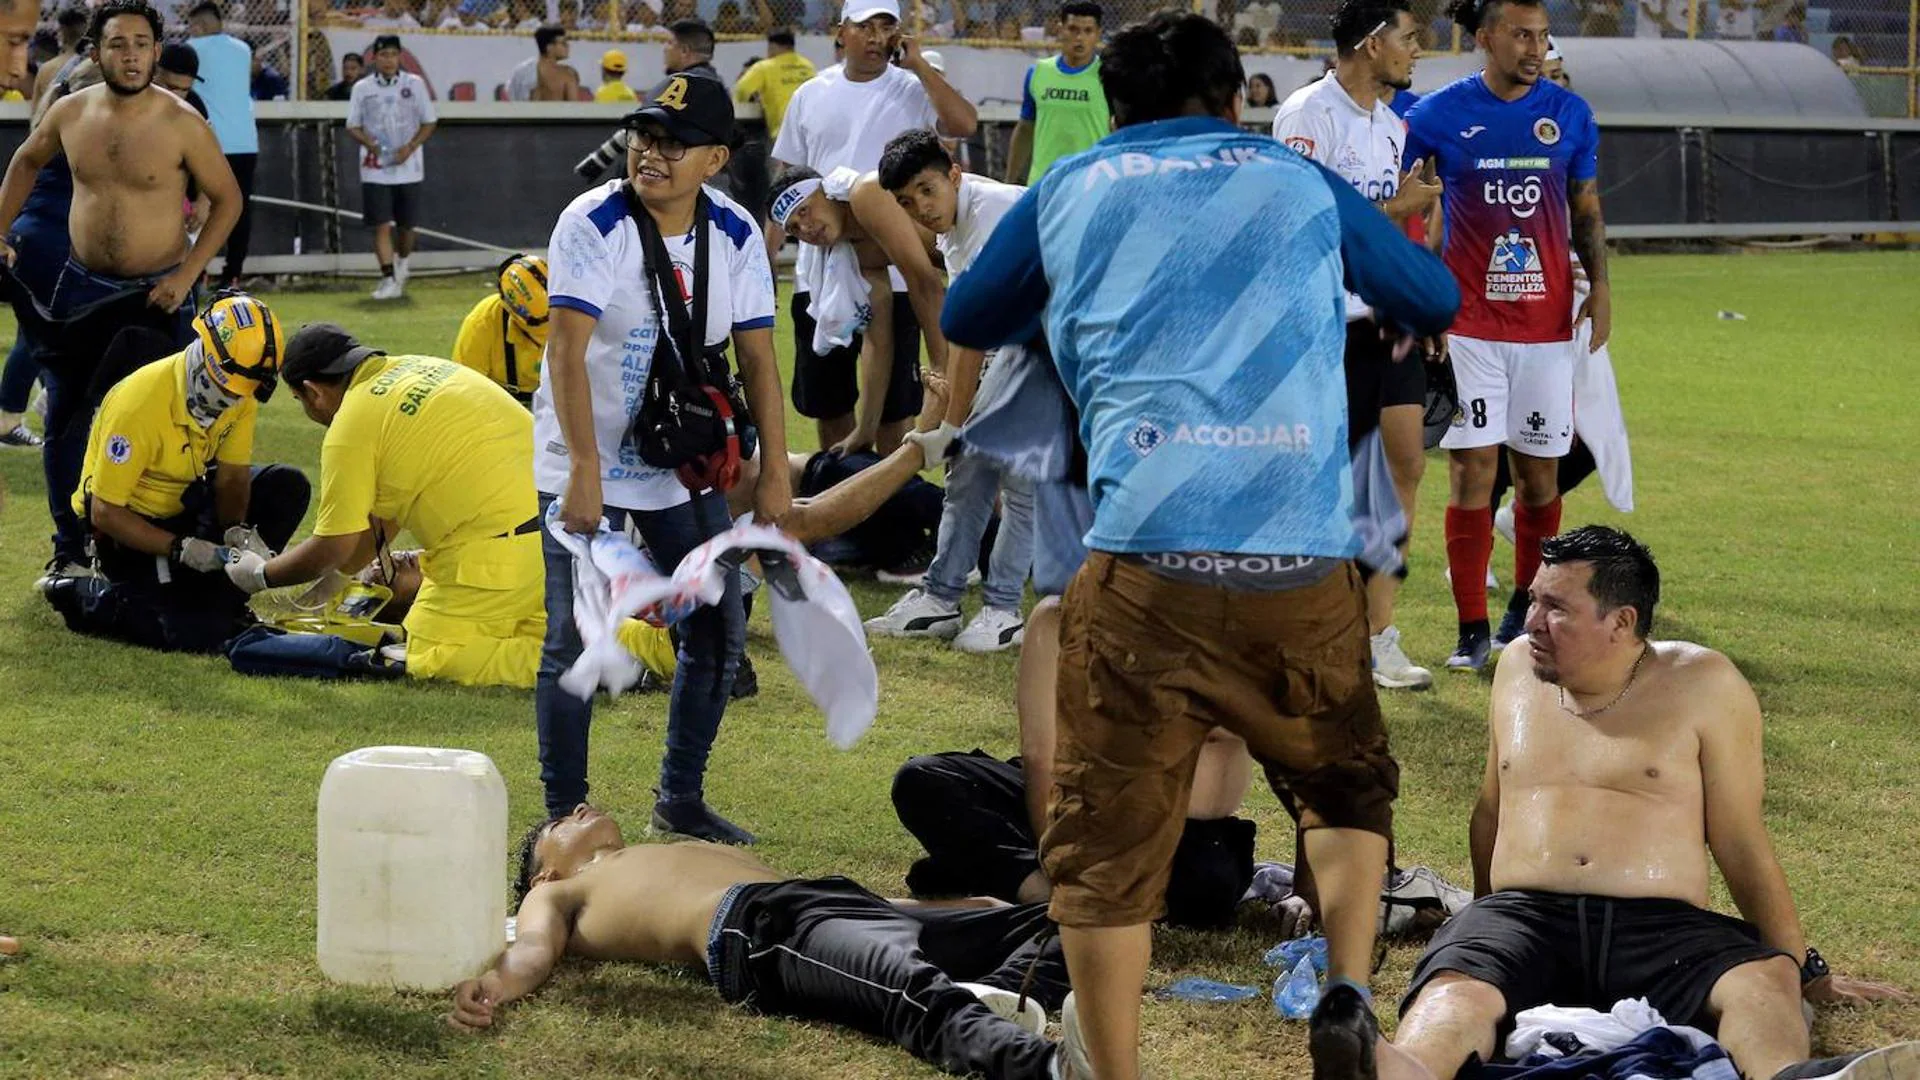 Twelve dead and hundreds injured in a stampede at a soccer stadium in El Salvador